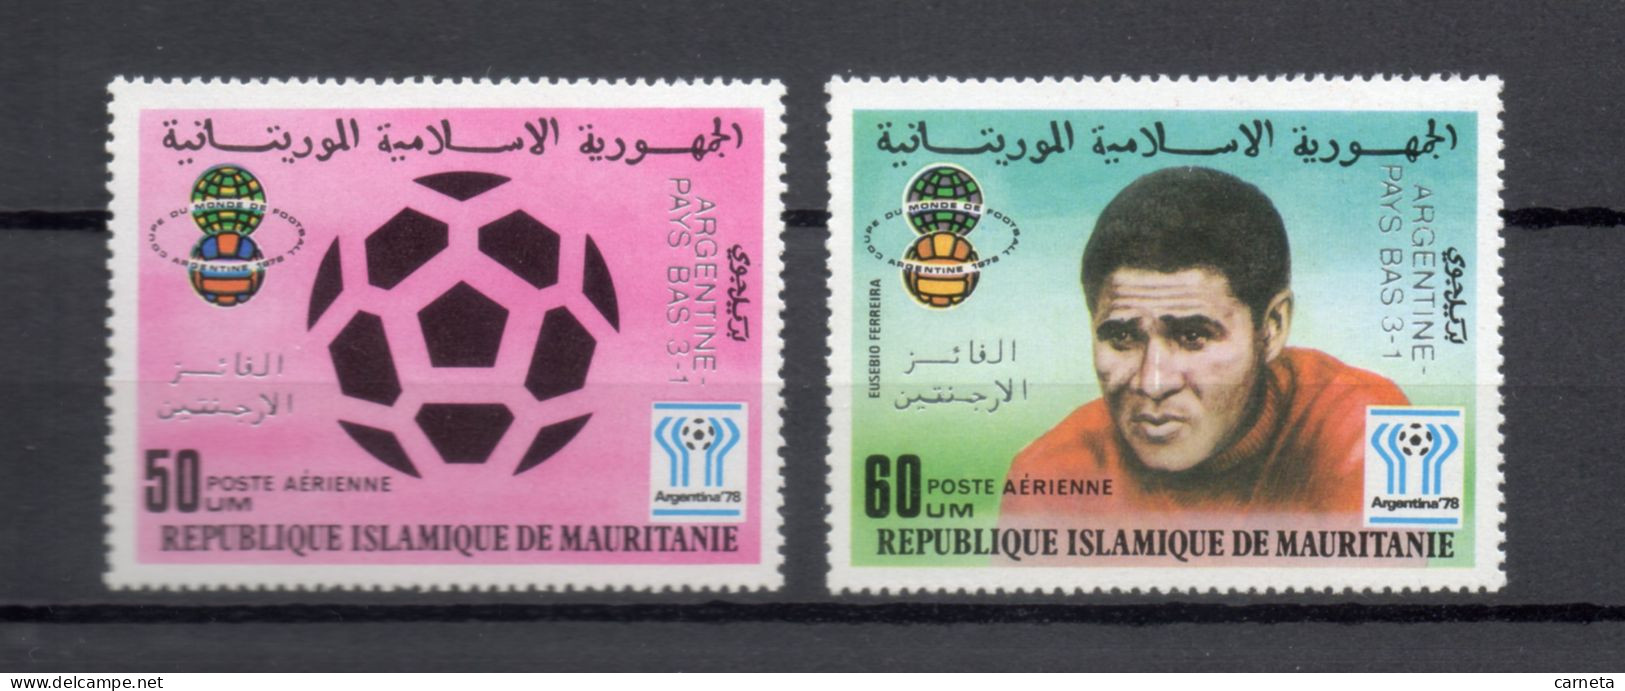 MAURITANIE  PA  N° 188 + 189   NEUFS SANS CHARNIERE   COTE 7.00€    FOOTBALL SPORT SURCHARGE - Mauritania (1960-...)